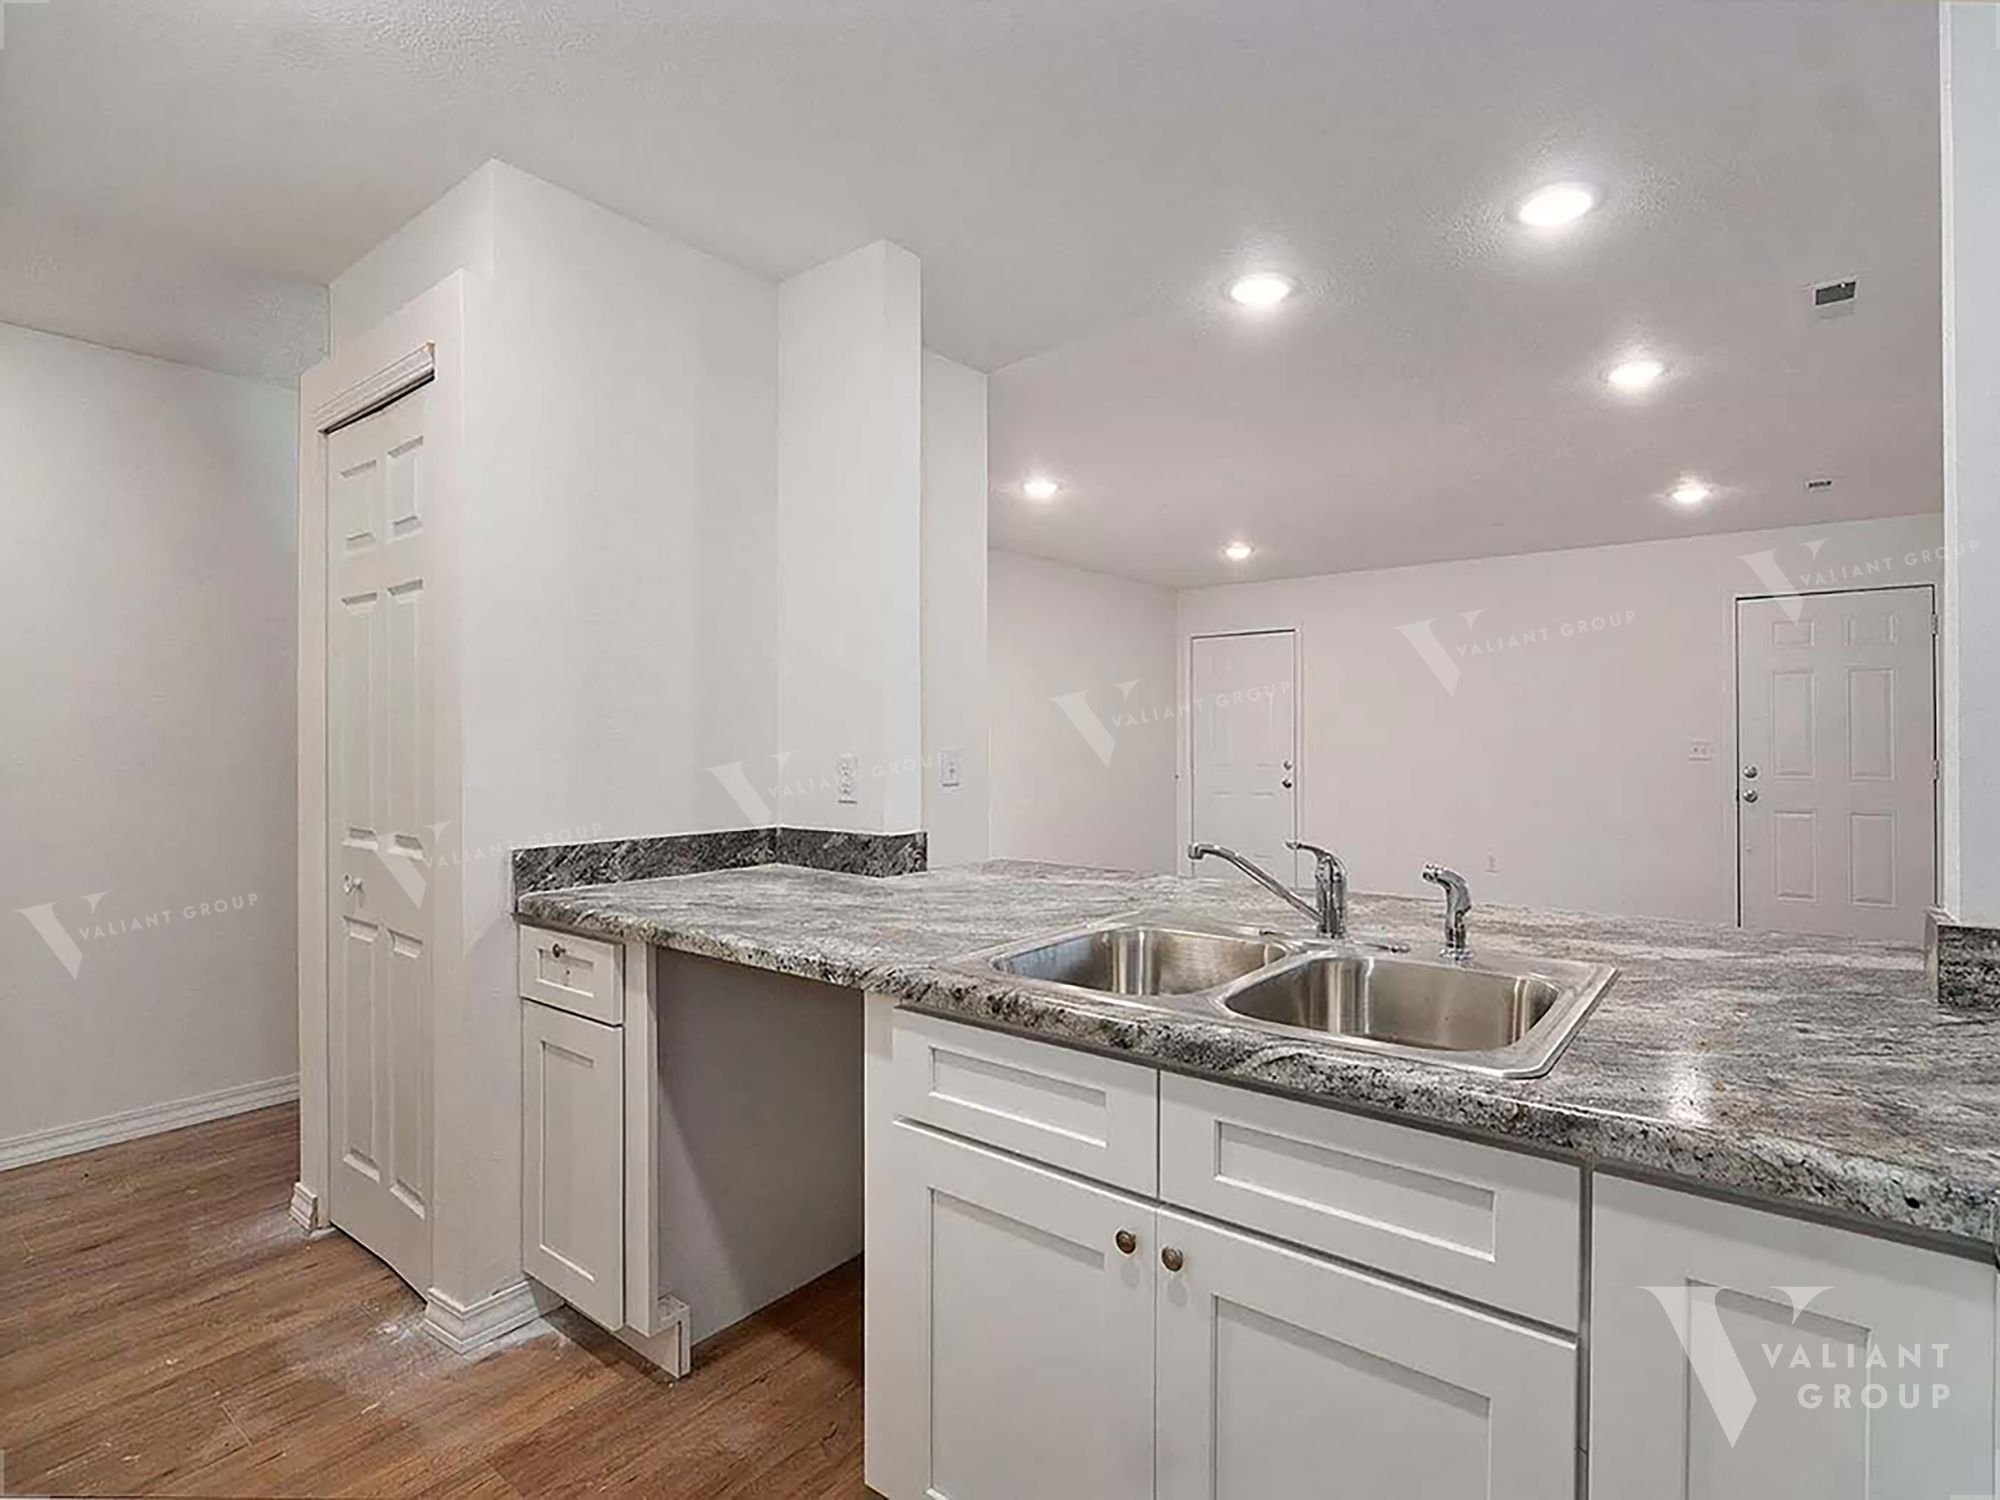 Duplex-For-Rent-Springfield-MO-1618-West-Scott-St-Unit-A-kitchen-sink.jpg